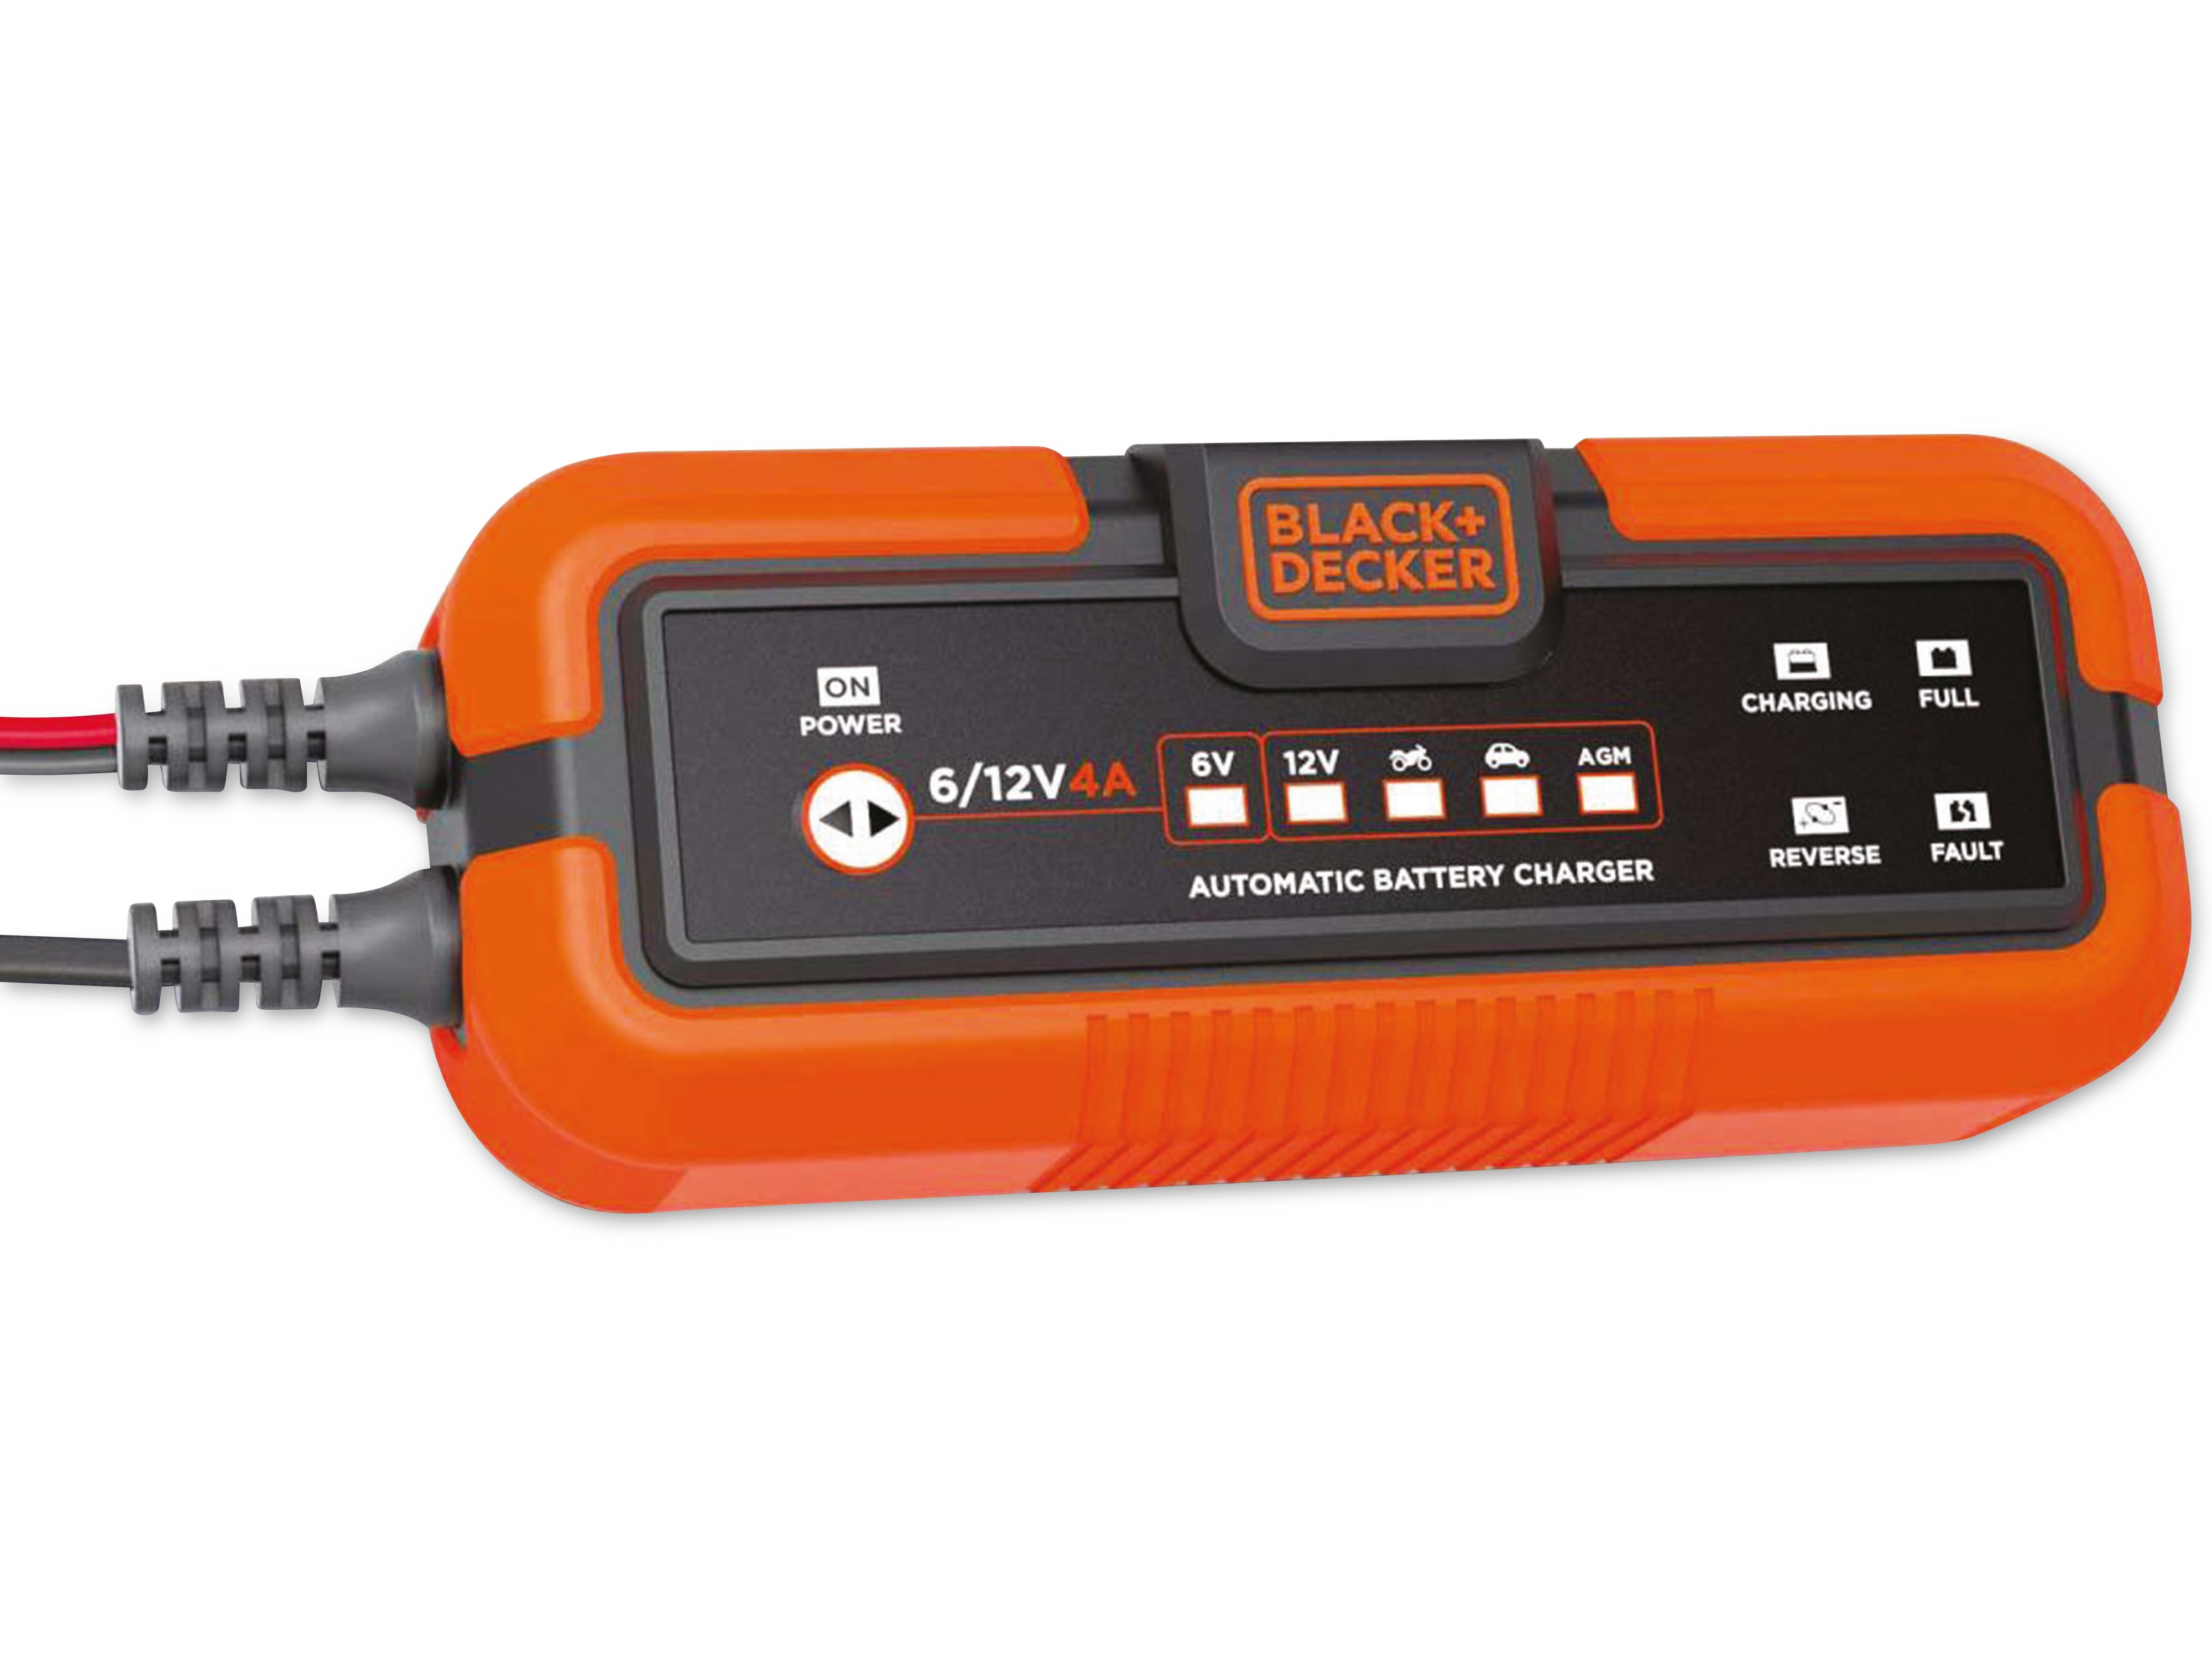 BLACK & DECKER Batterie-Ladegerät, 6V + 12 V, 4 A, für Blei-Akkus, IP65